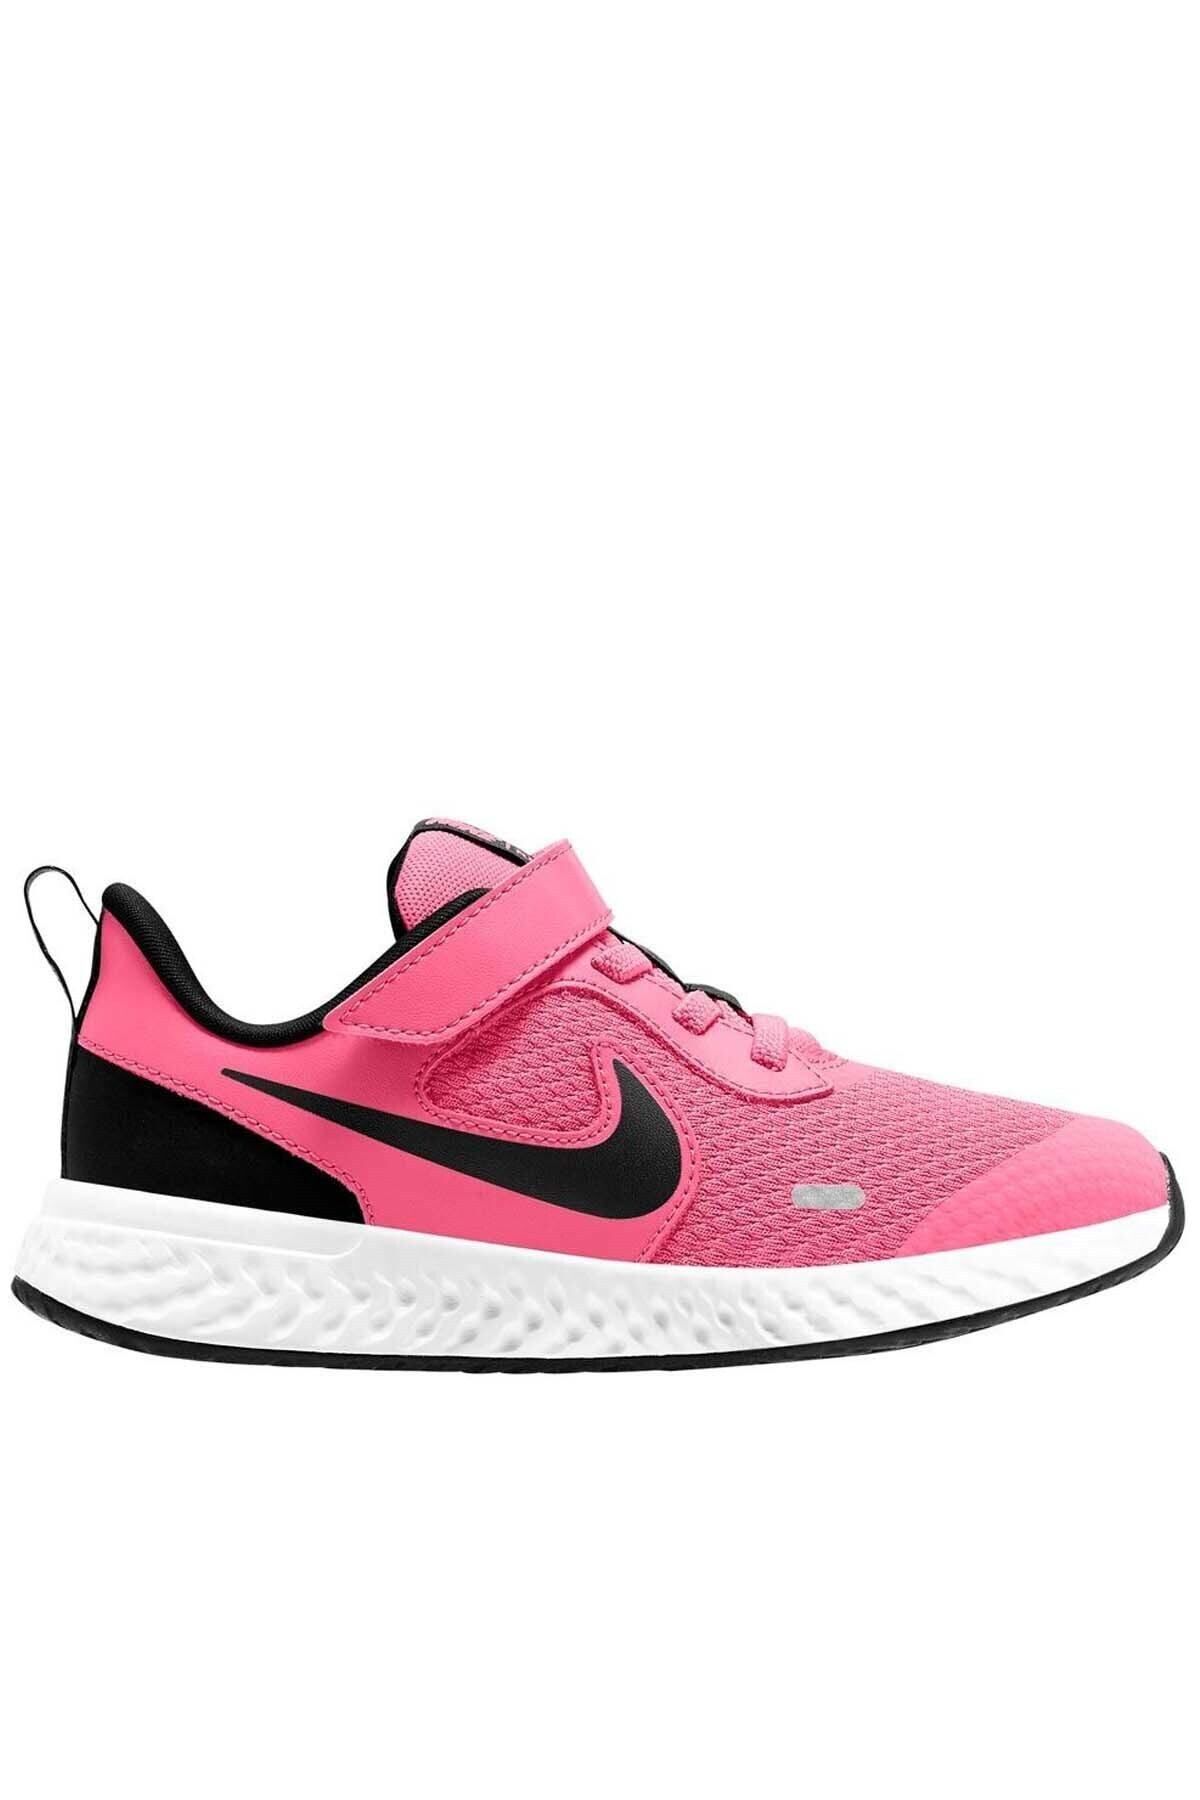 Nike Revolution 5 Kids Pink Psv Kız Çocuk Çırtlı Bantlı Lastik Ipli Yürüyüş Koşu Ayakkabısı Pembe